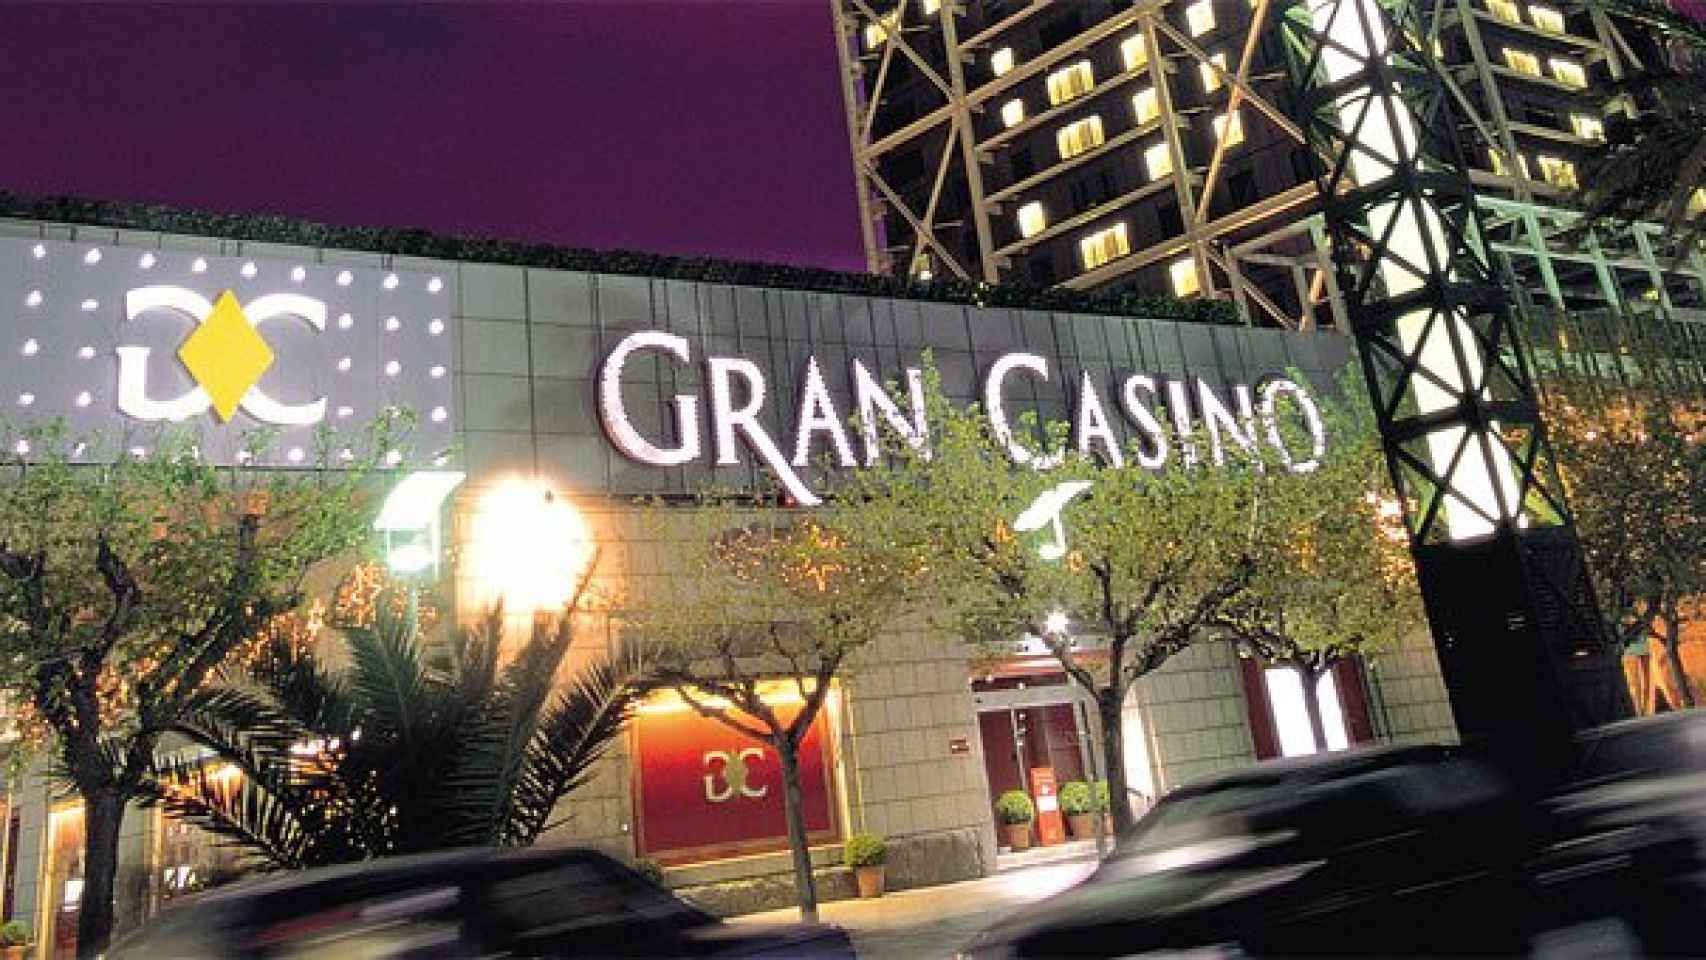 Casino de Barcelona